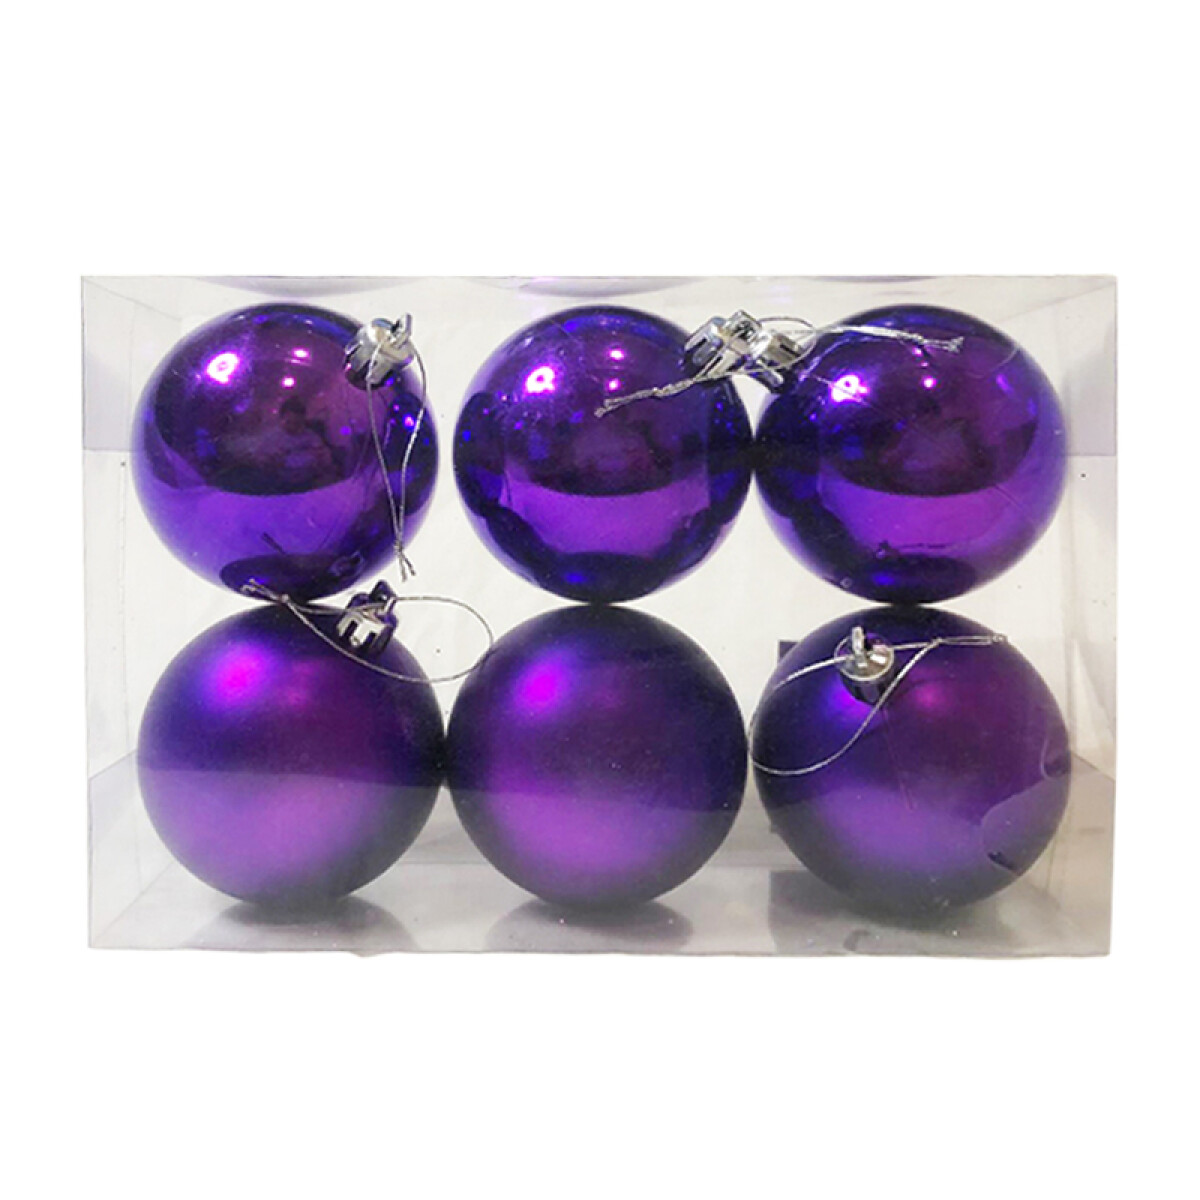 Adorno navideño de 7 cm violeta opaco x 6 